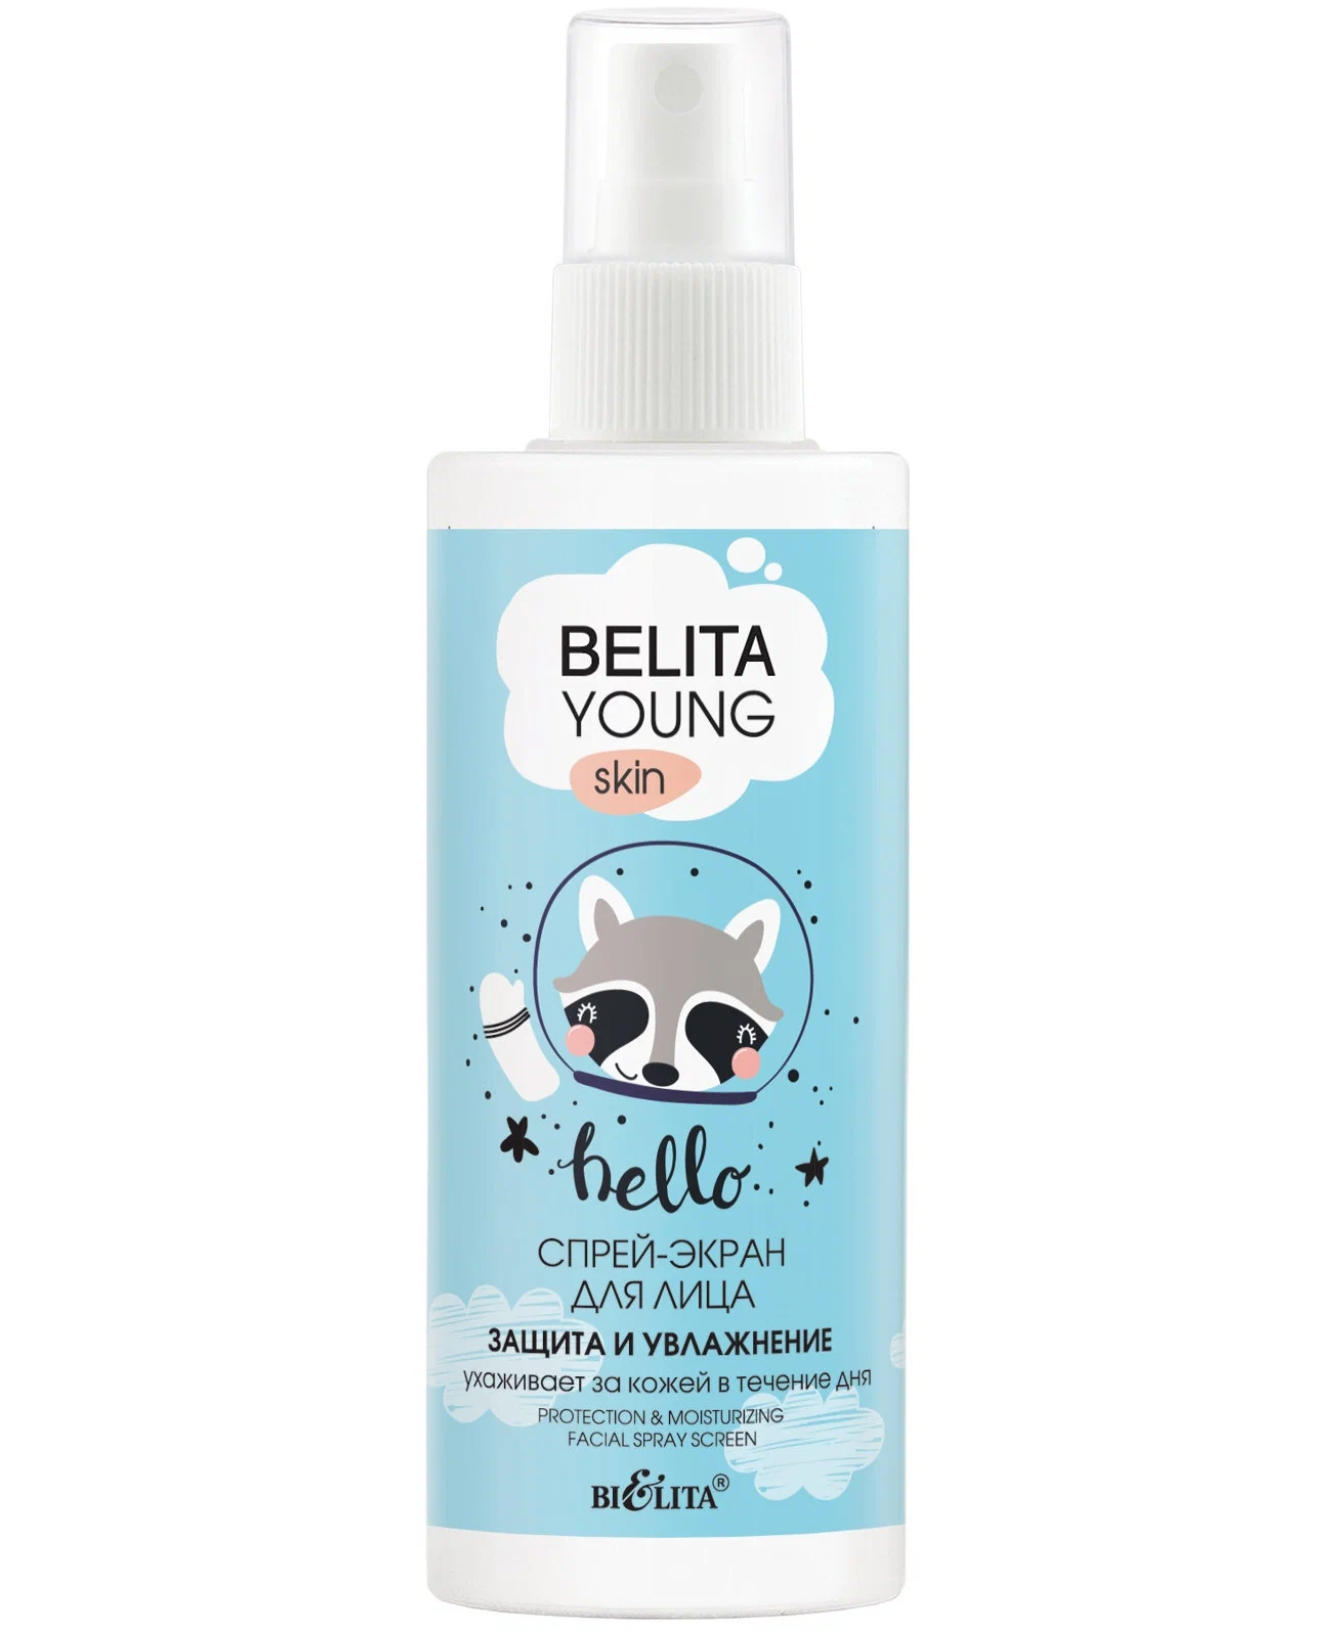 Белита / Belita Young Skin - Спрей-экран для лица Hello Защита и увлажнение 115 мл